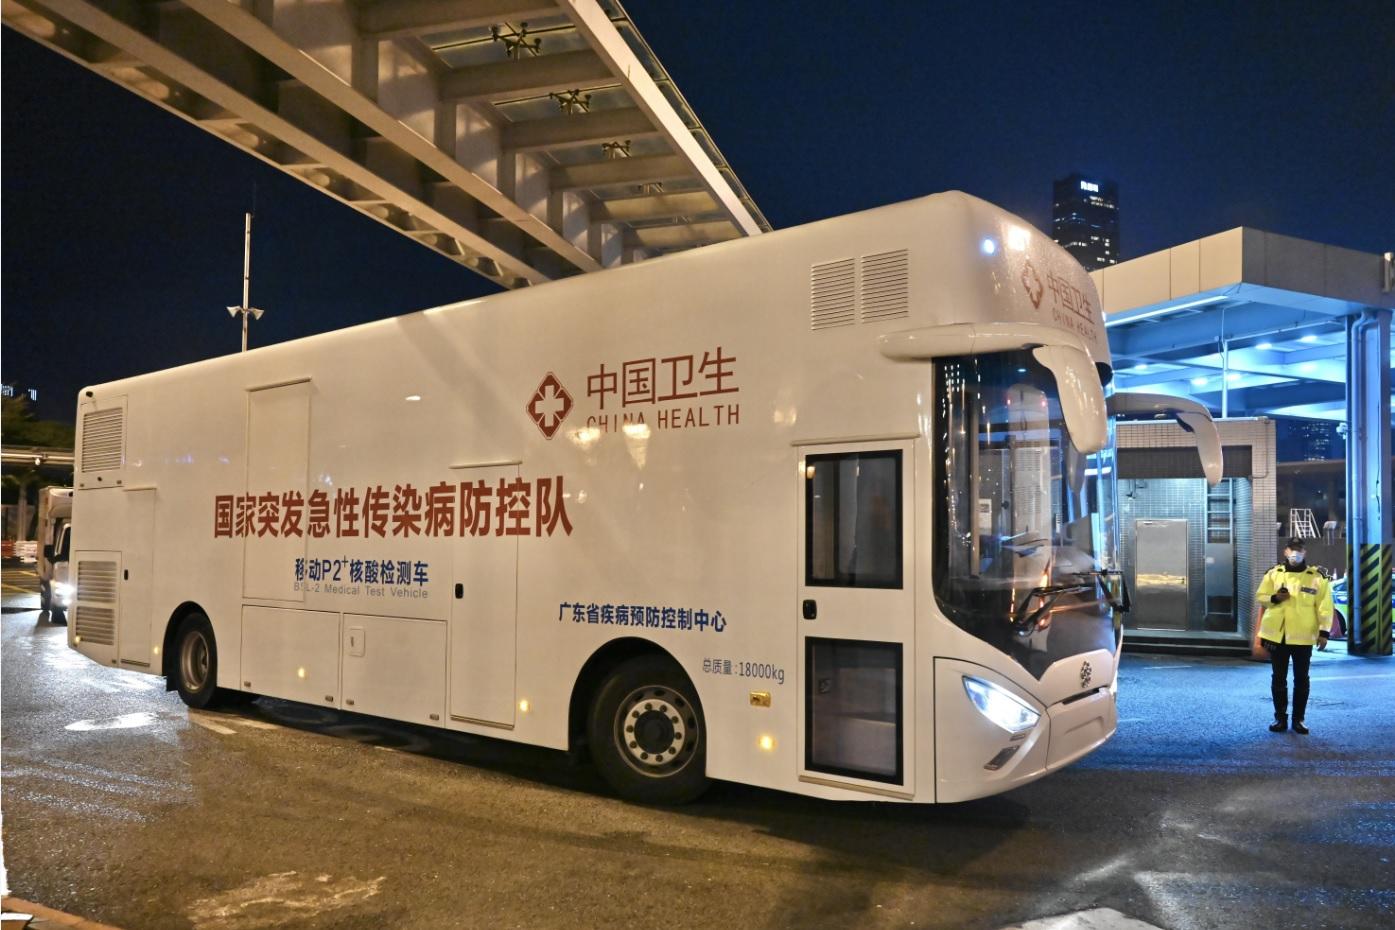 行政長官林鄭月娥今日（二月十七日）在深圳灣口岸歡迎內地專家和技術人員等抵港。圖示兩部流動檢測車從內地抵達香港。